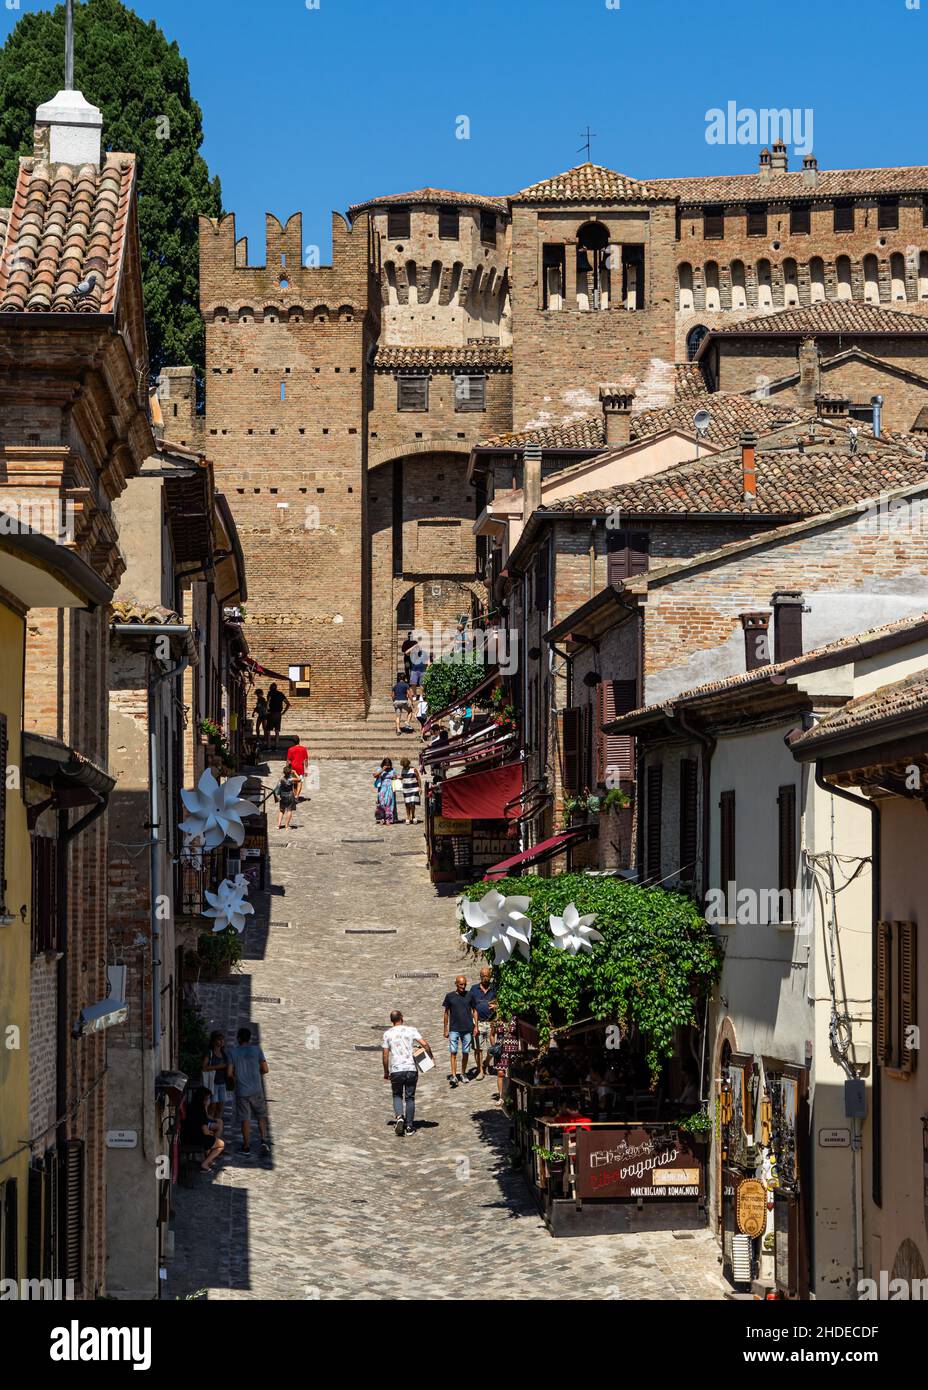 Vue sur Gradara, ville médiévale colorée de la région des Marches et destination touristique populaire, Marche, Italie Banque D'Images